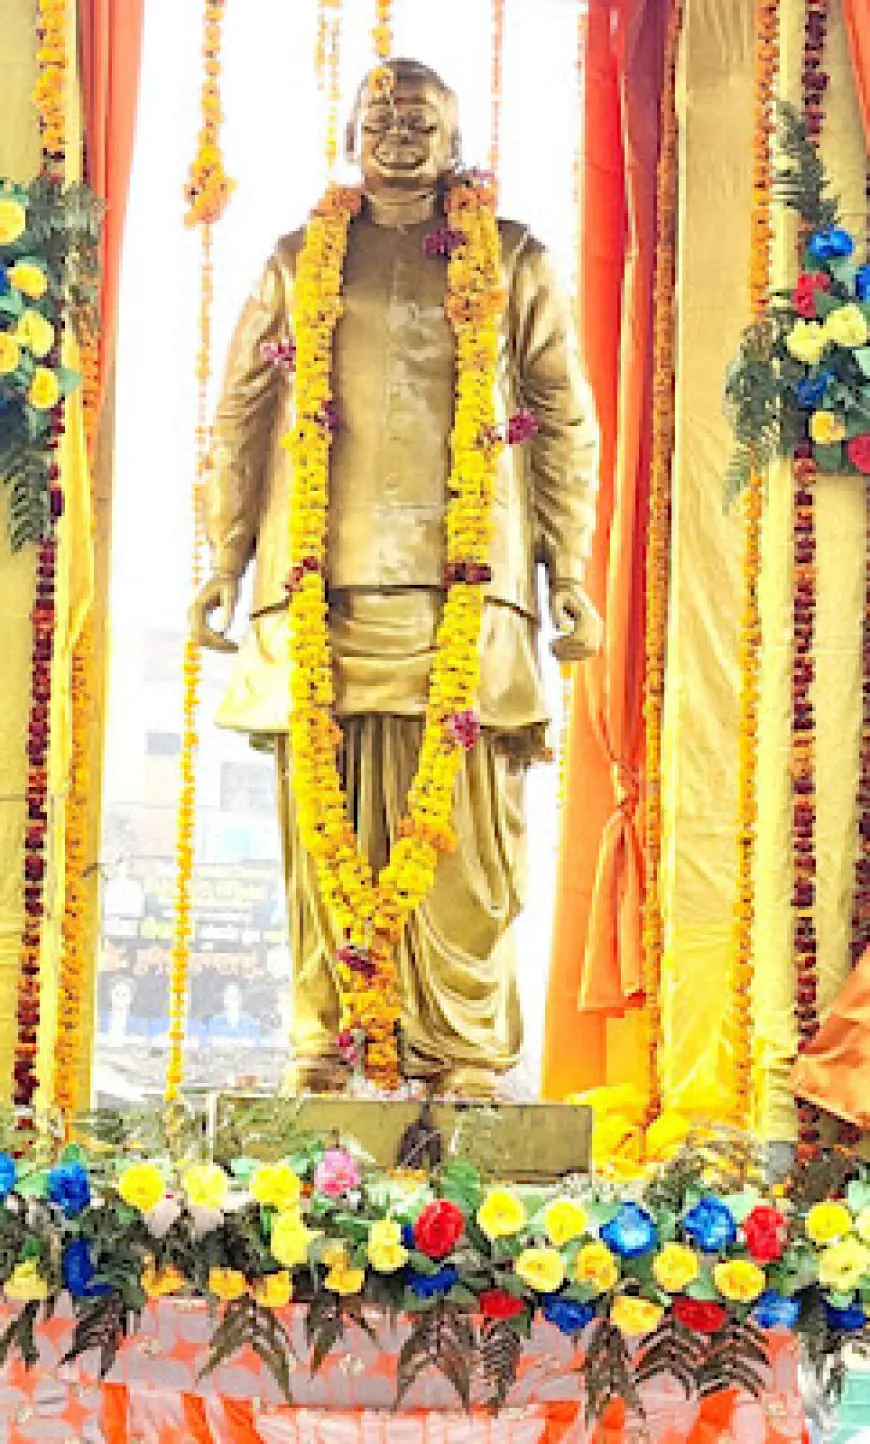 कासगंज सदर विधायक द्वारा पूर्व मुख्यमंत्री कल्याण सिंह की प्रतिमा का किया गया अनावरण।